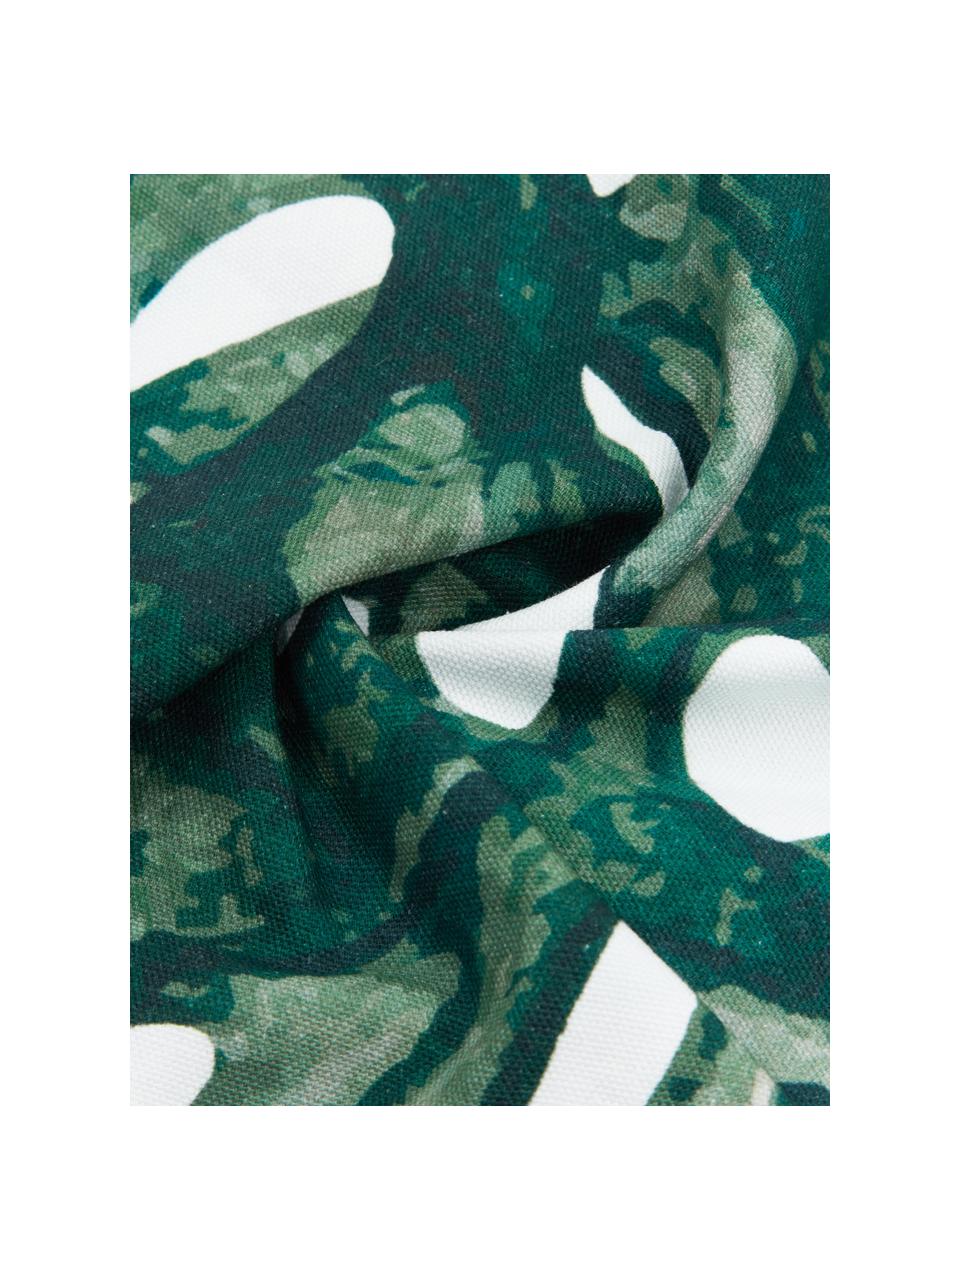 Kussenhoes Tropics met monstera print in groen/wit, 100% katoen, Groen, wit, 40 x 40 cm